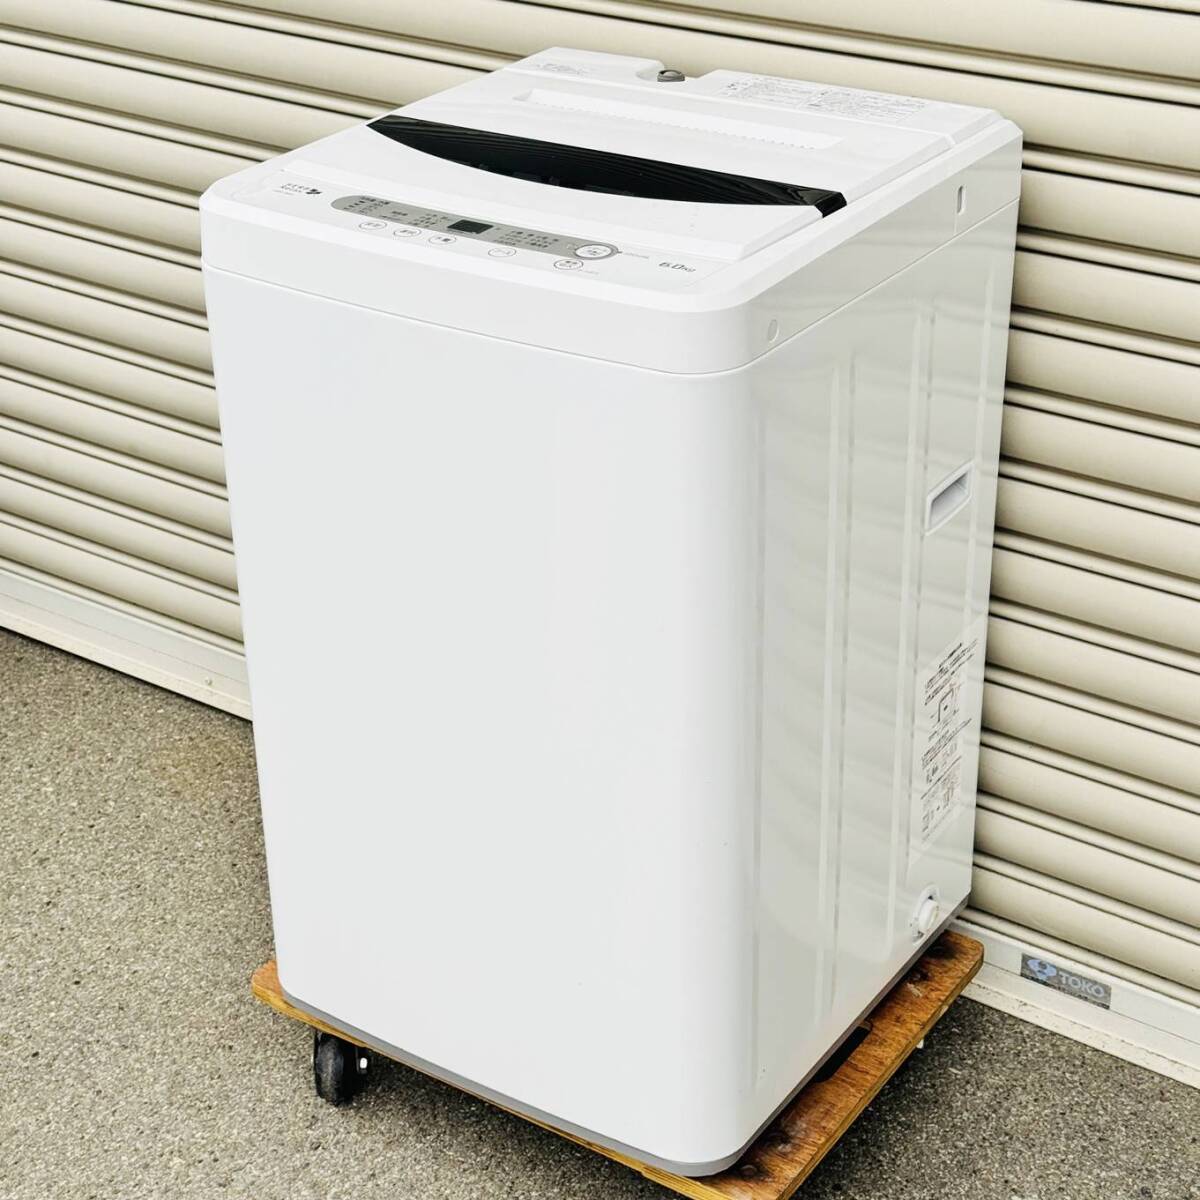 甲MJ17547 クリーニング済 動作確認済 2017年製 6.0㎏ ヤマダ電機 全自動電気洗濯機 YWM-T60A1 ホース付 ホワイト 白色 家電の画像1